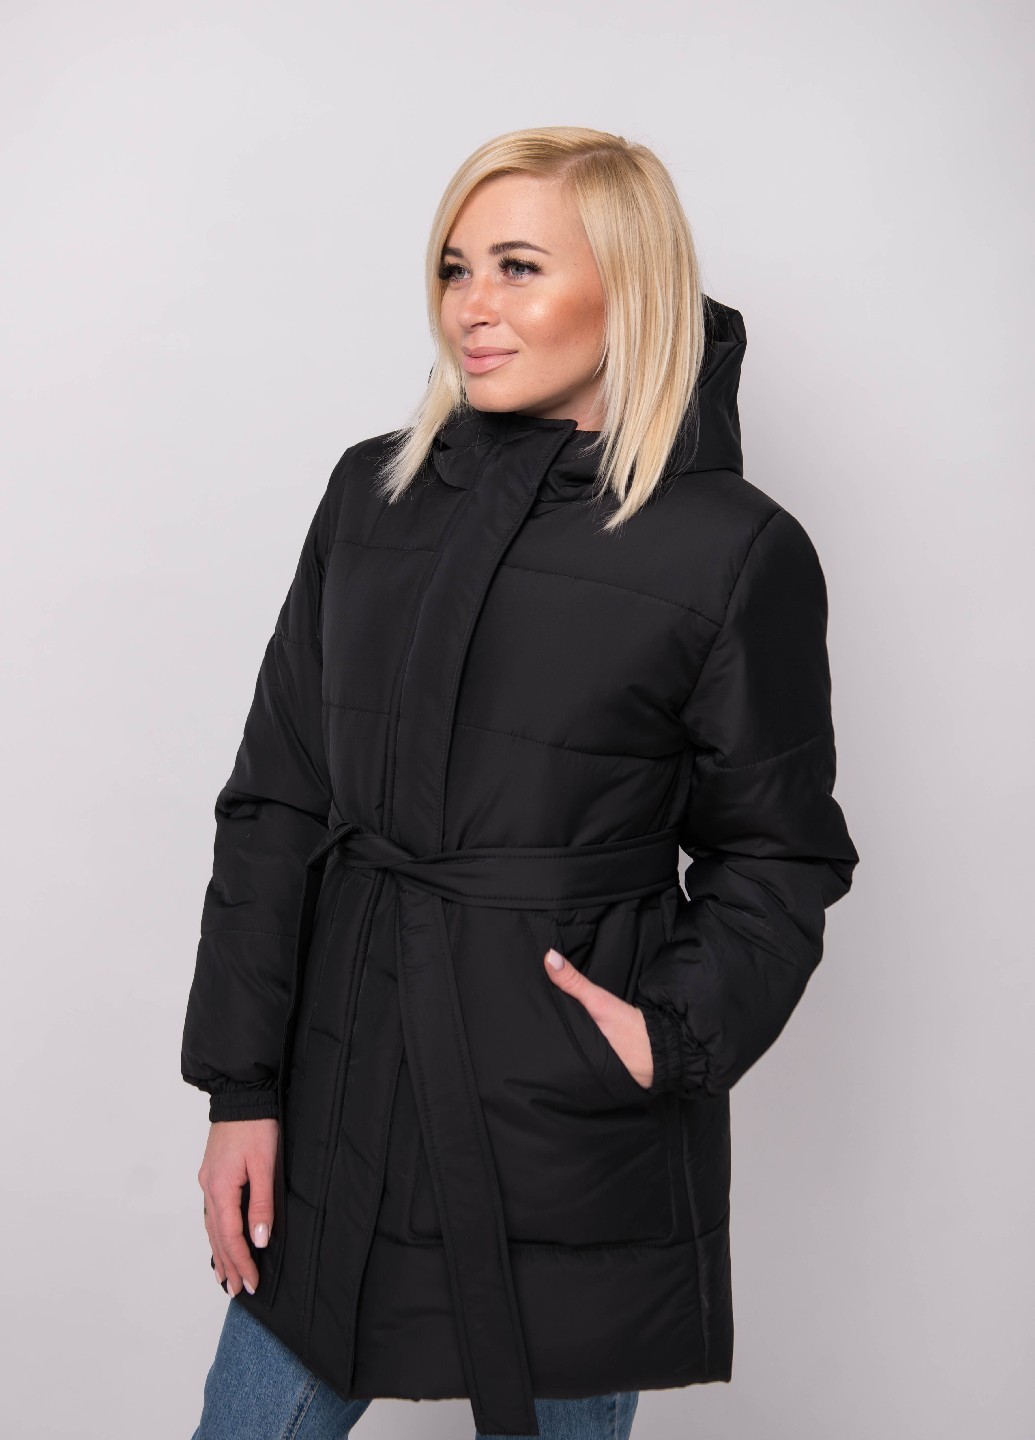 Куртка женская зимняя черная 290/109 в интернет-магазине